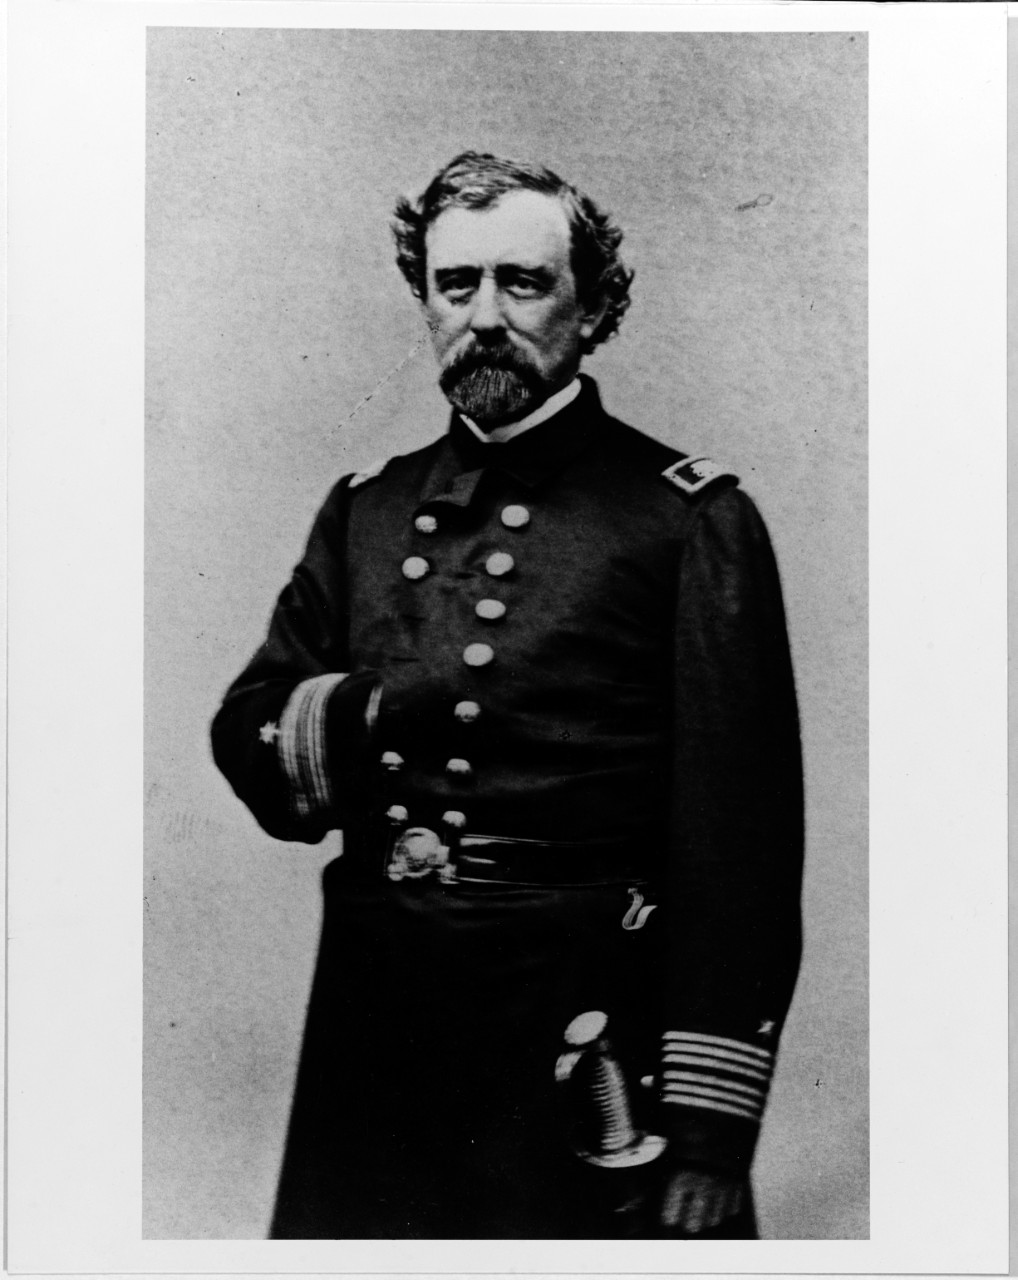 Captain James Alden, USN